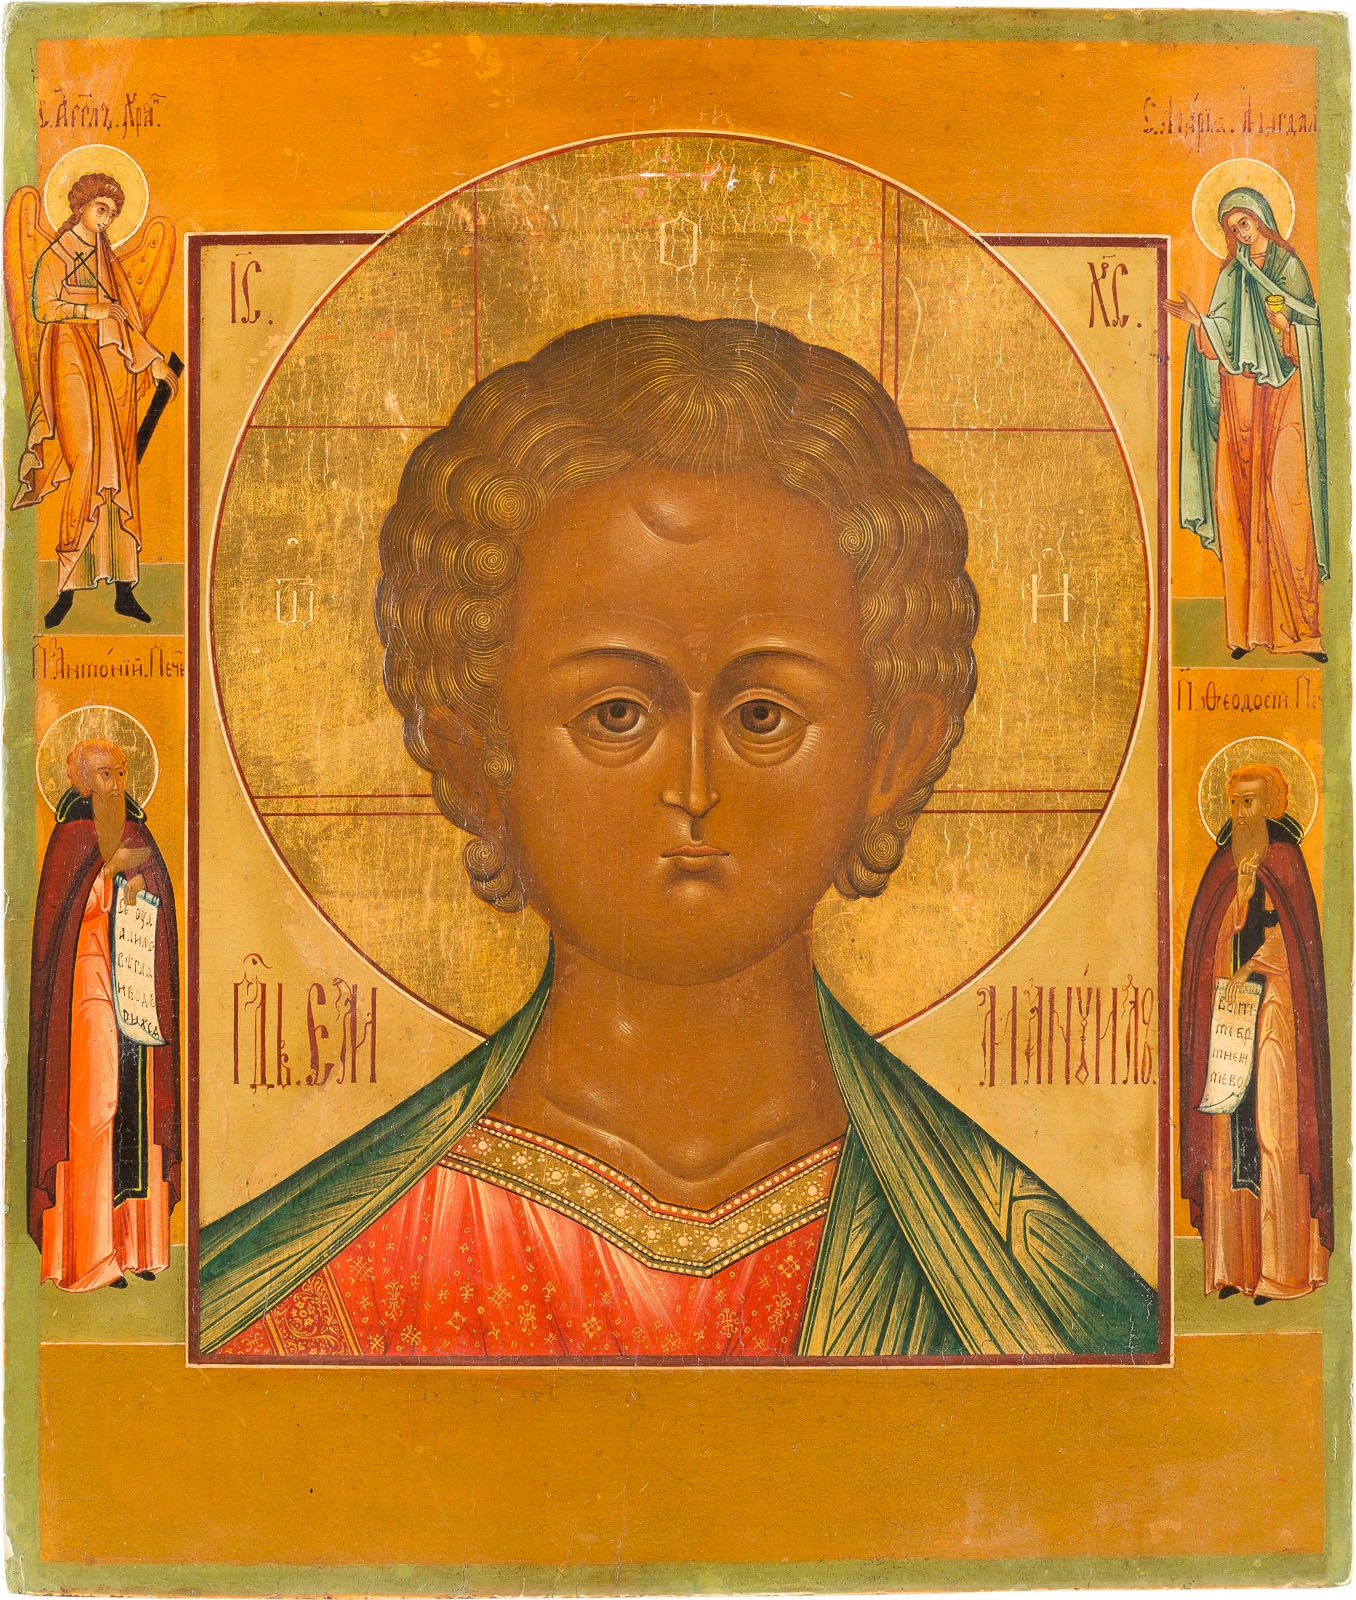 AN ICON SHOWING CHRIST EMANUEL 显示基督马努埃尔的圣像 俄罗斯，帕莱赫，19世纪下半叶 木板上的淡彩画，有科夫切格。光环是镀金的。&hellip;